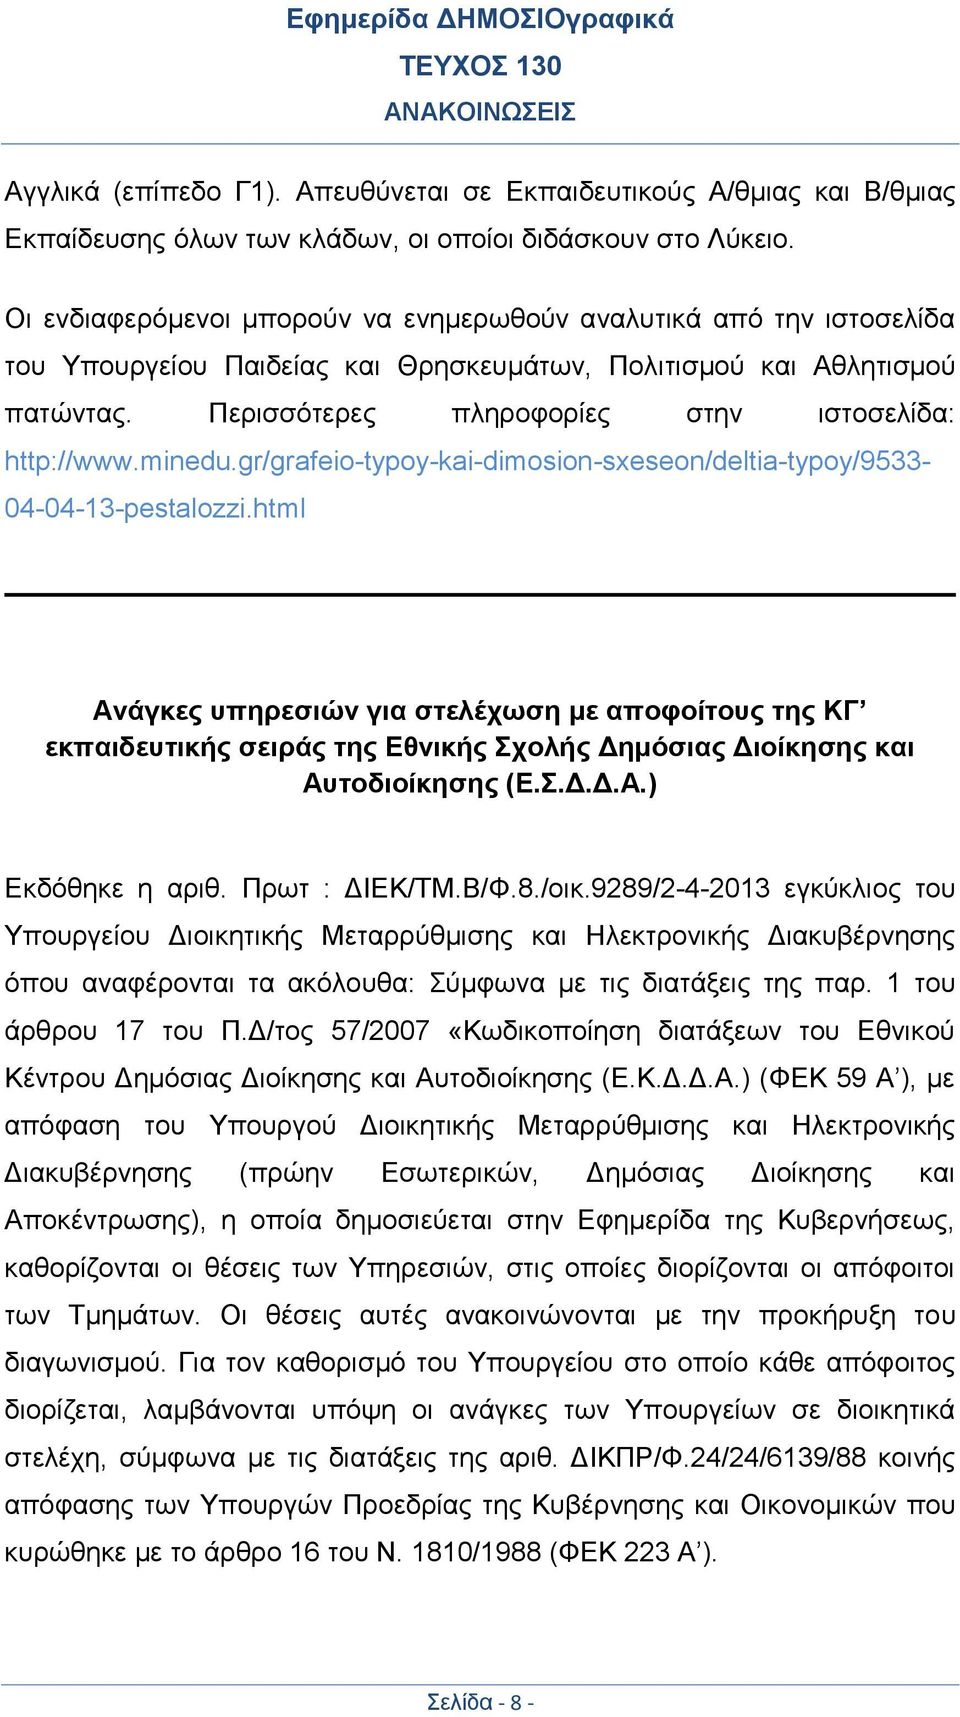 Περισσότερες πληροφορίες στην ιστοσελίδα: http://www.minedu.gr/grafeio-typoy-kai-dimosion-sxeseon/deltia-typoy/9533-04-04-13-pestalozzi.